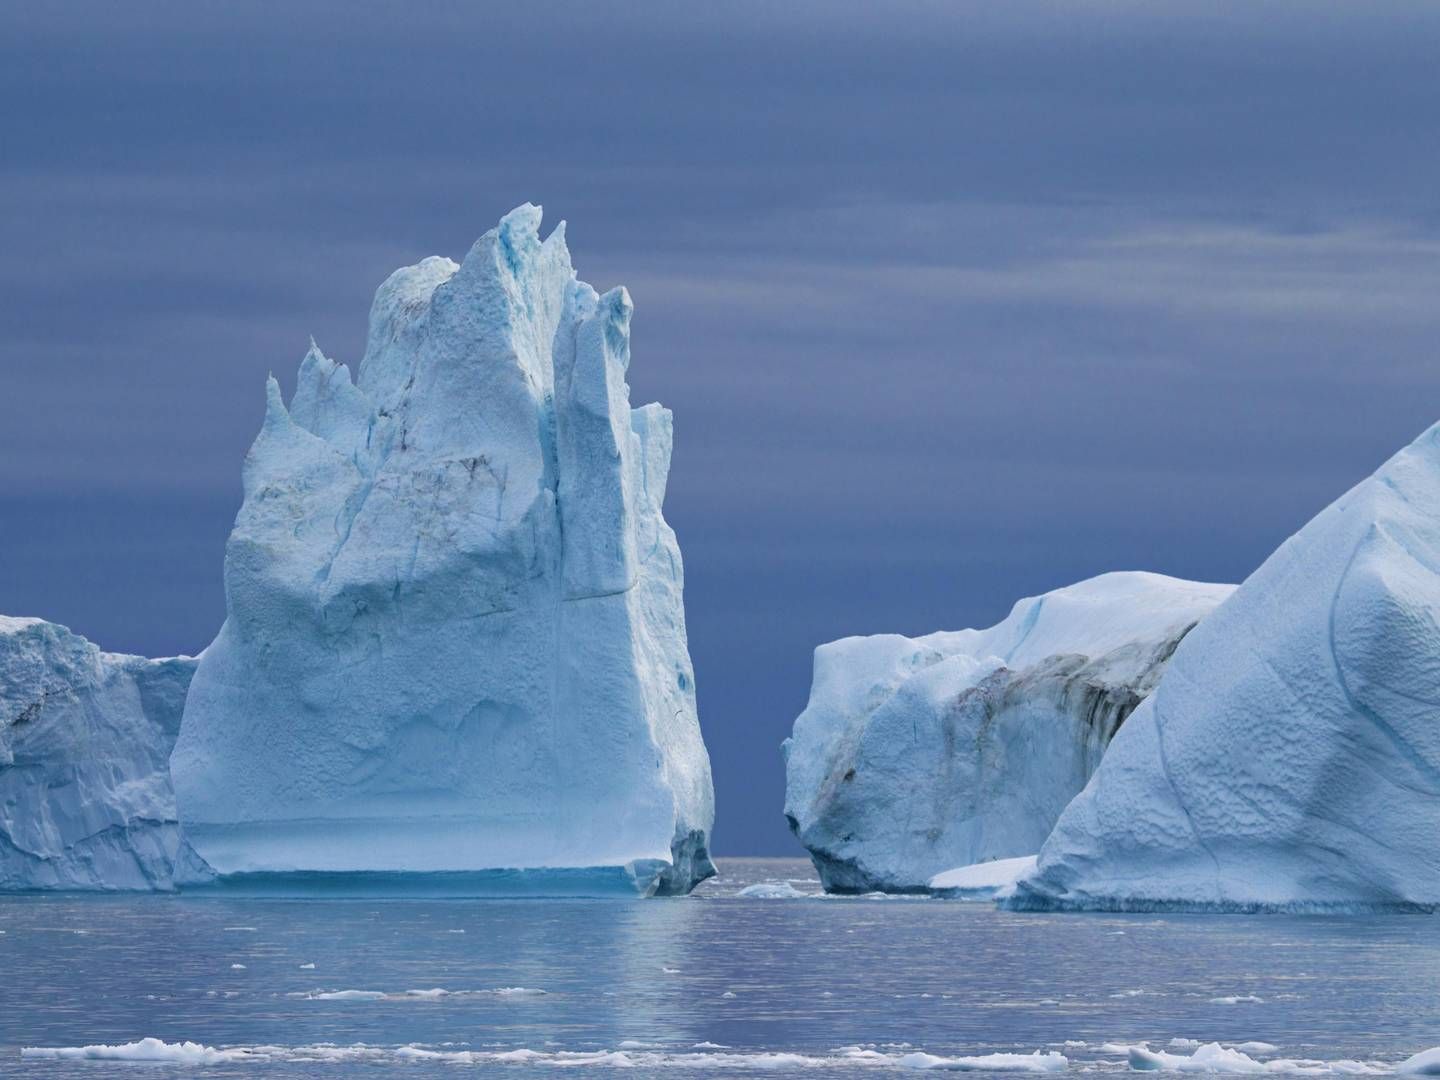 Eisberg voraus - im zweiten Halbjahr dürfte es noch einige IPOs geben. | Foto: picture alliance / imageBROKER | alimdi / Arterra